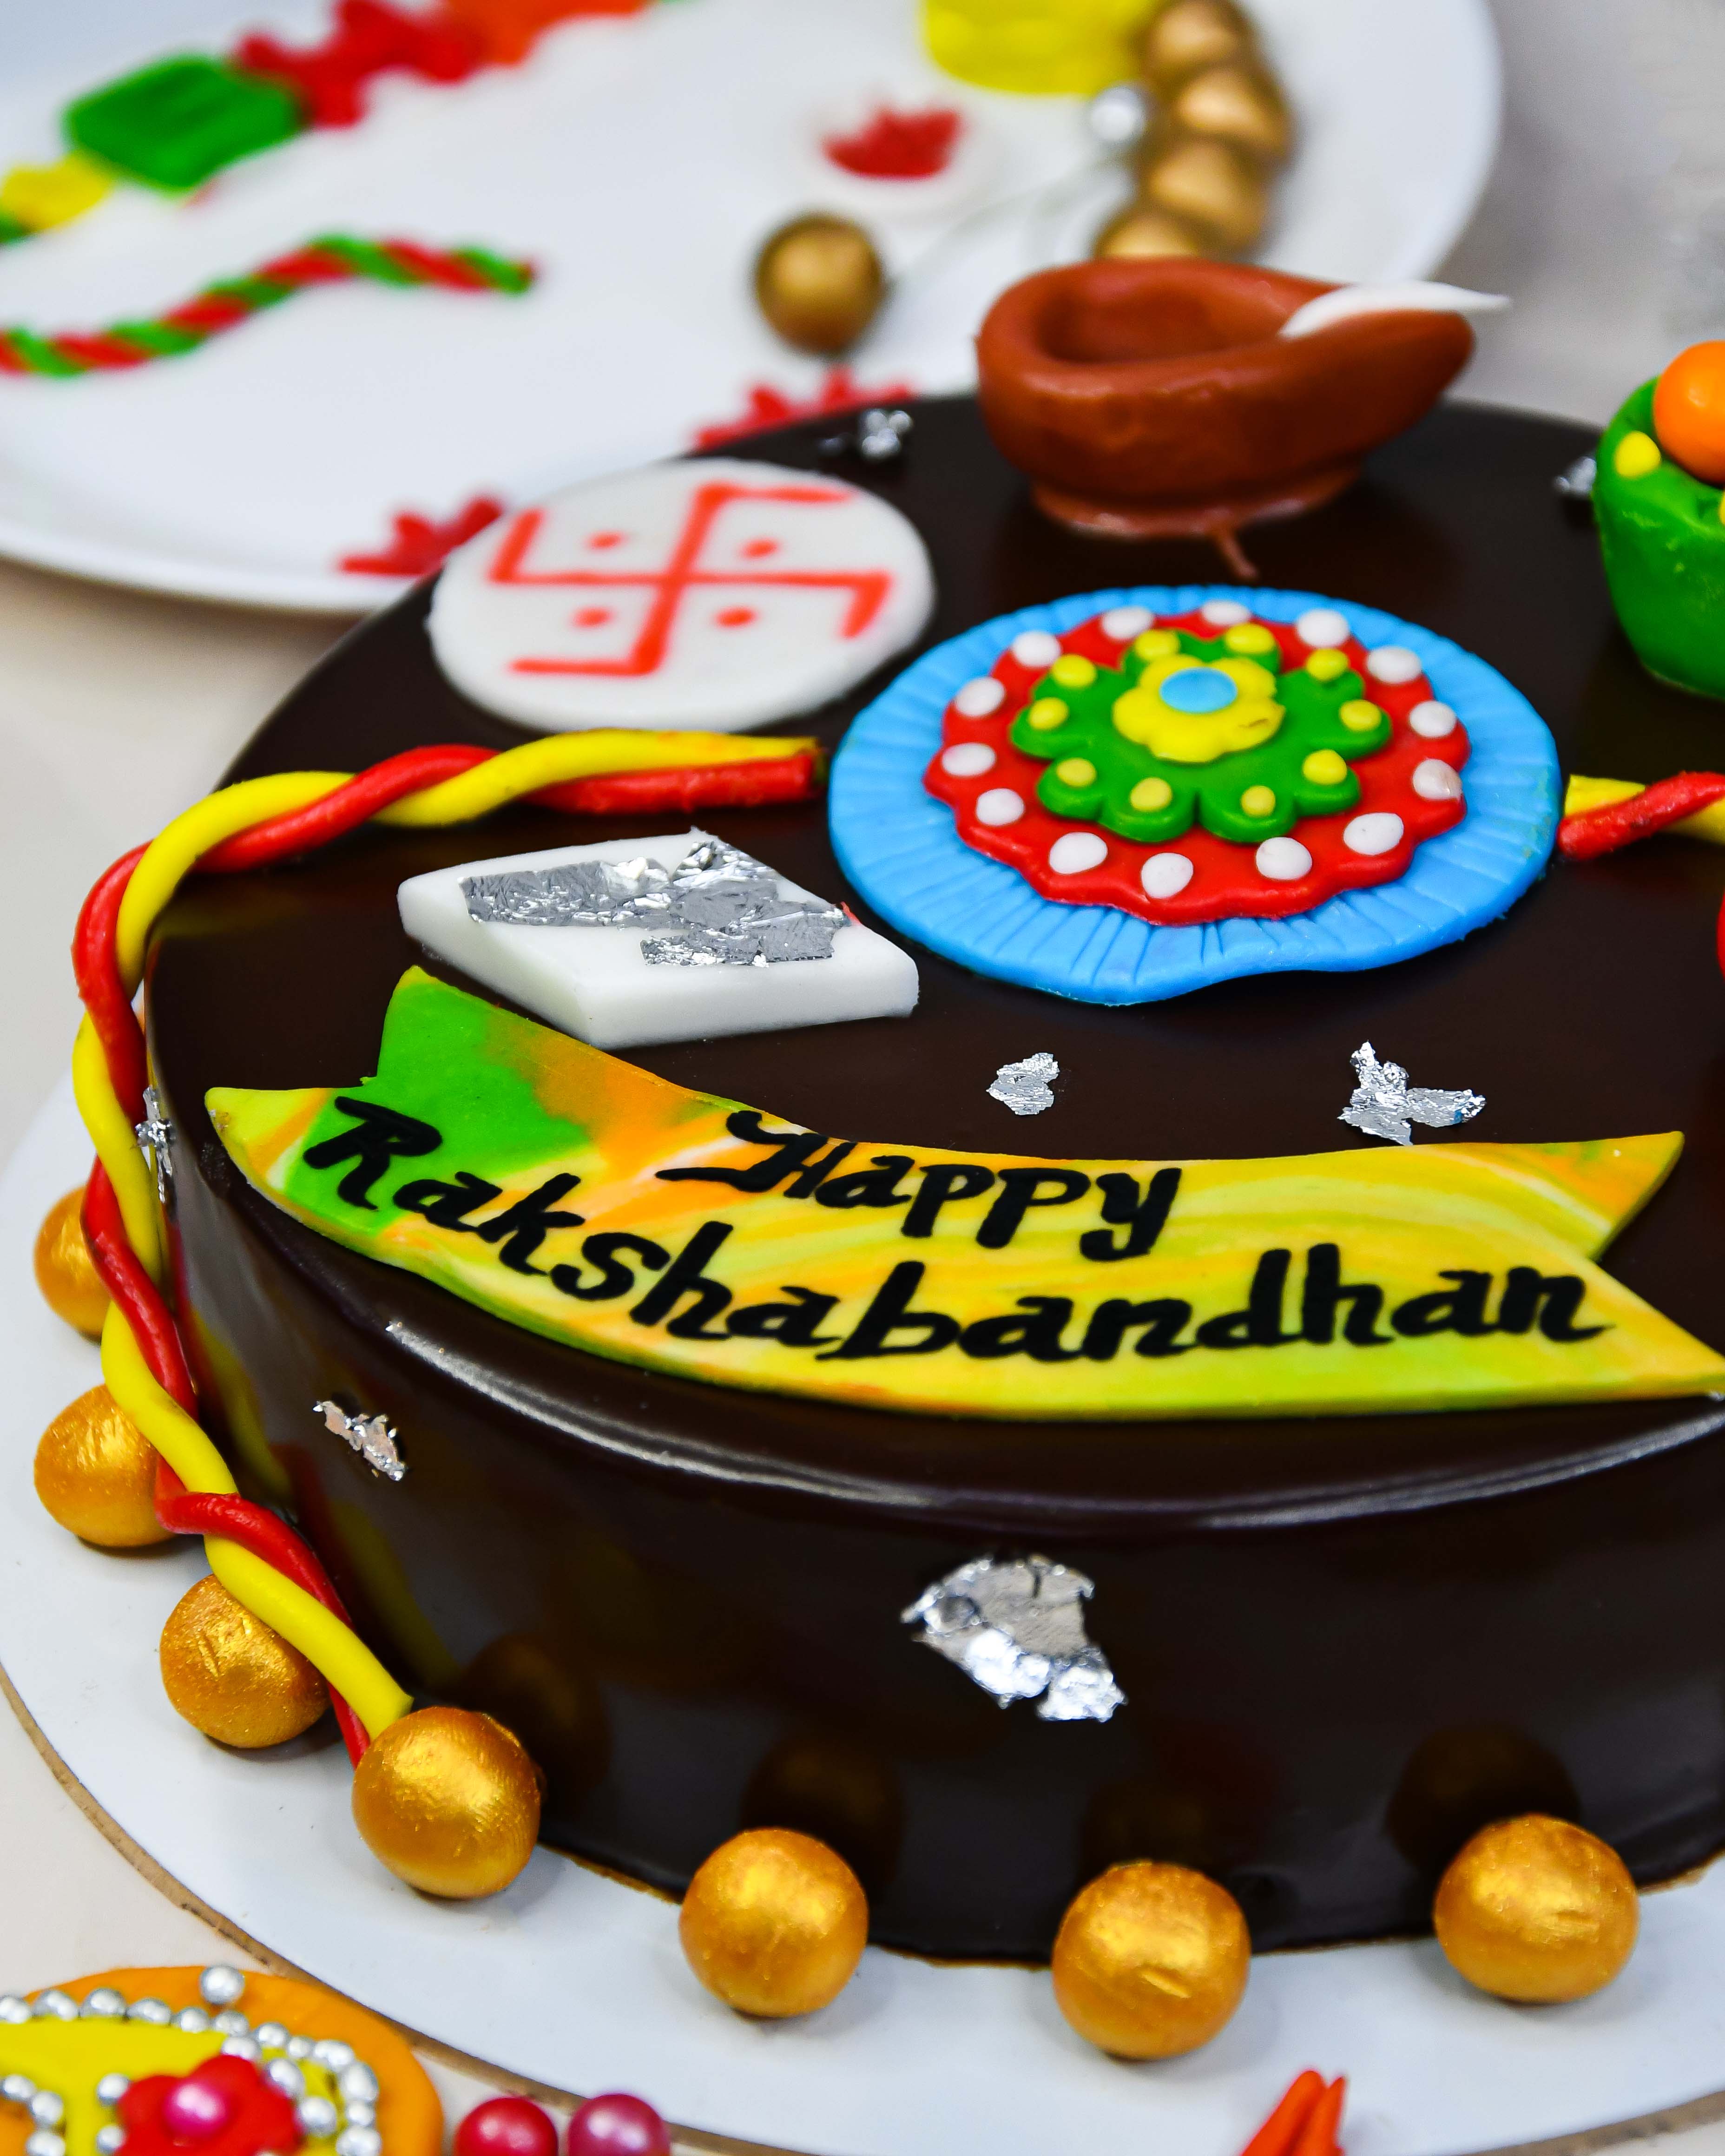 Raksha Bandhan Cakes | Upto Rs.350 OFF | Order Online Rakhi With Cakes now!